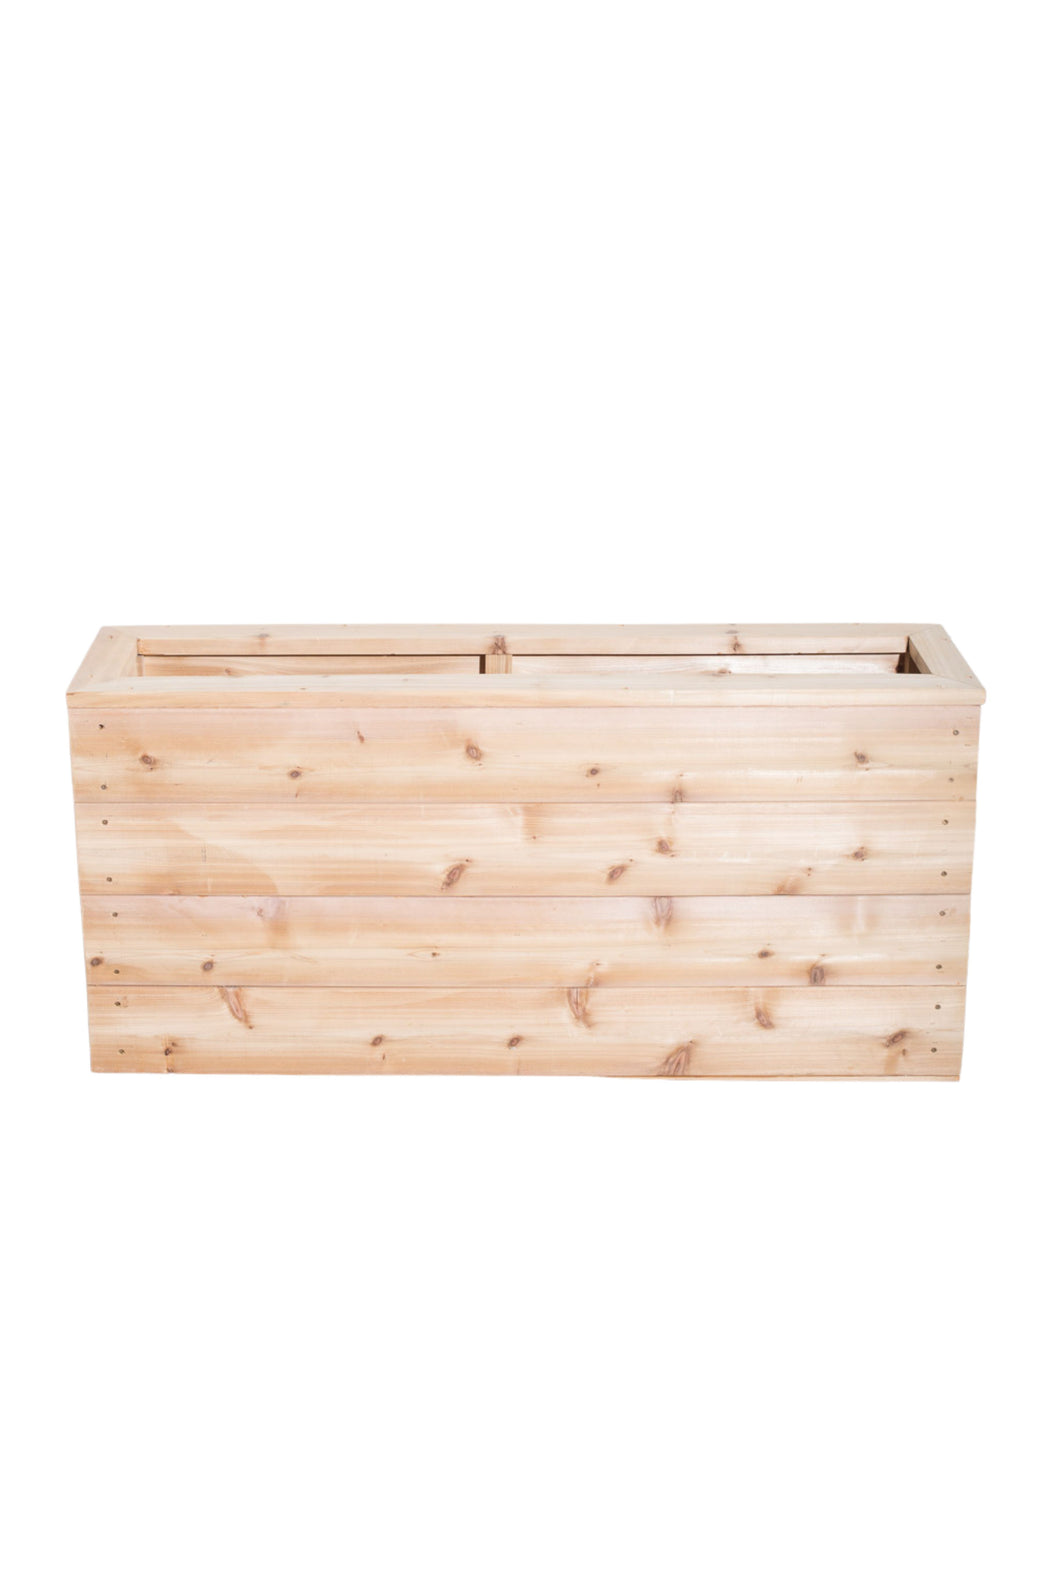 Boxed Cedar Planter